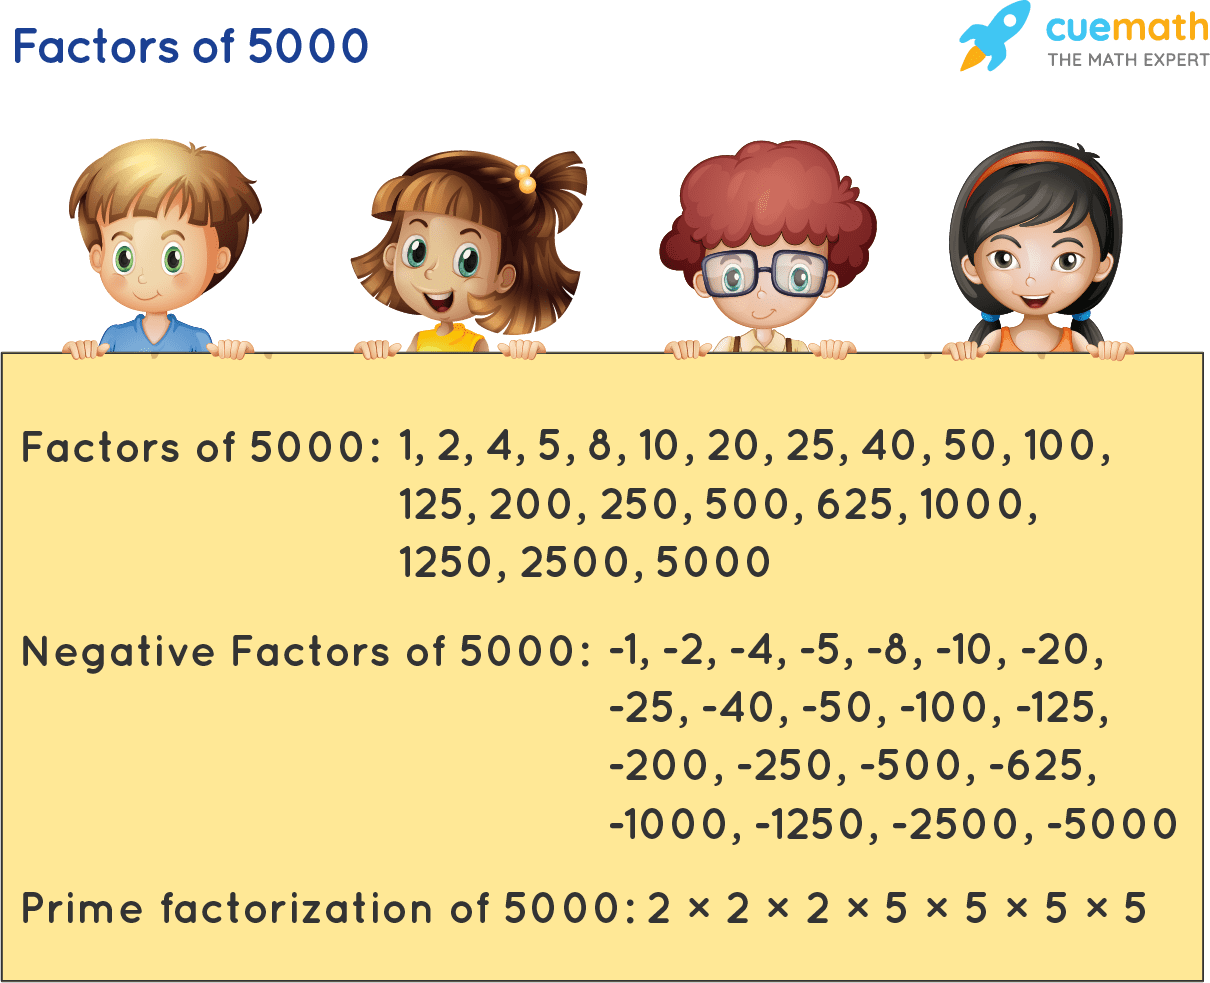 Factors of 5000